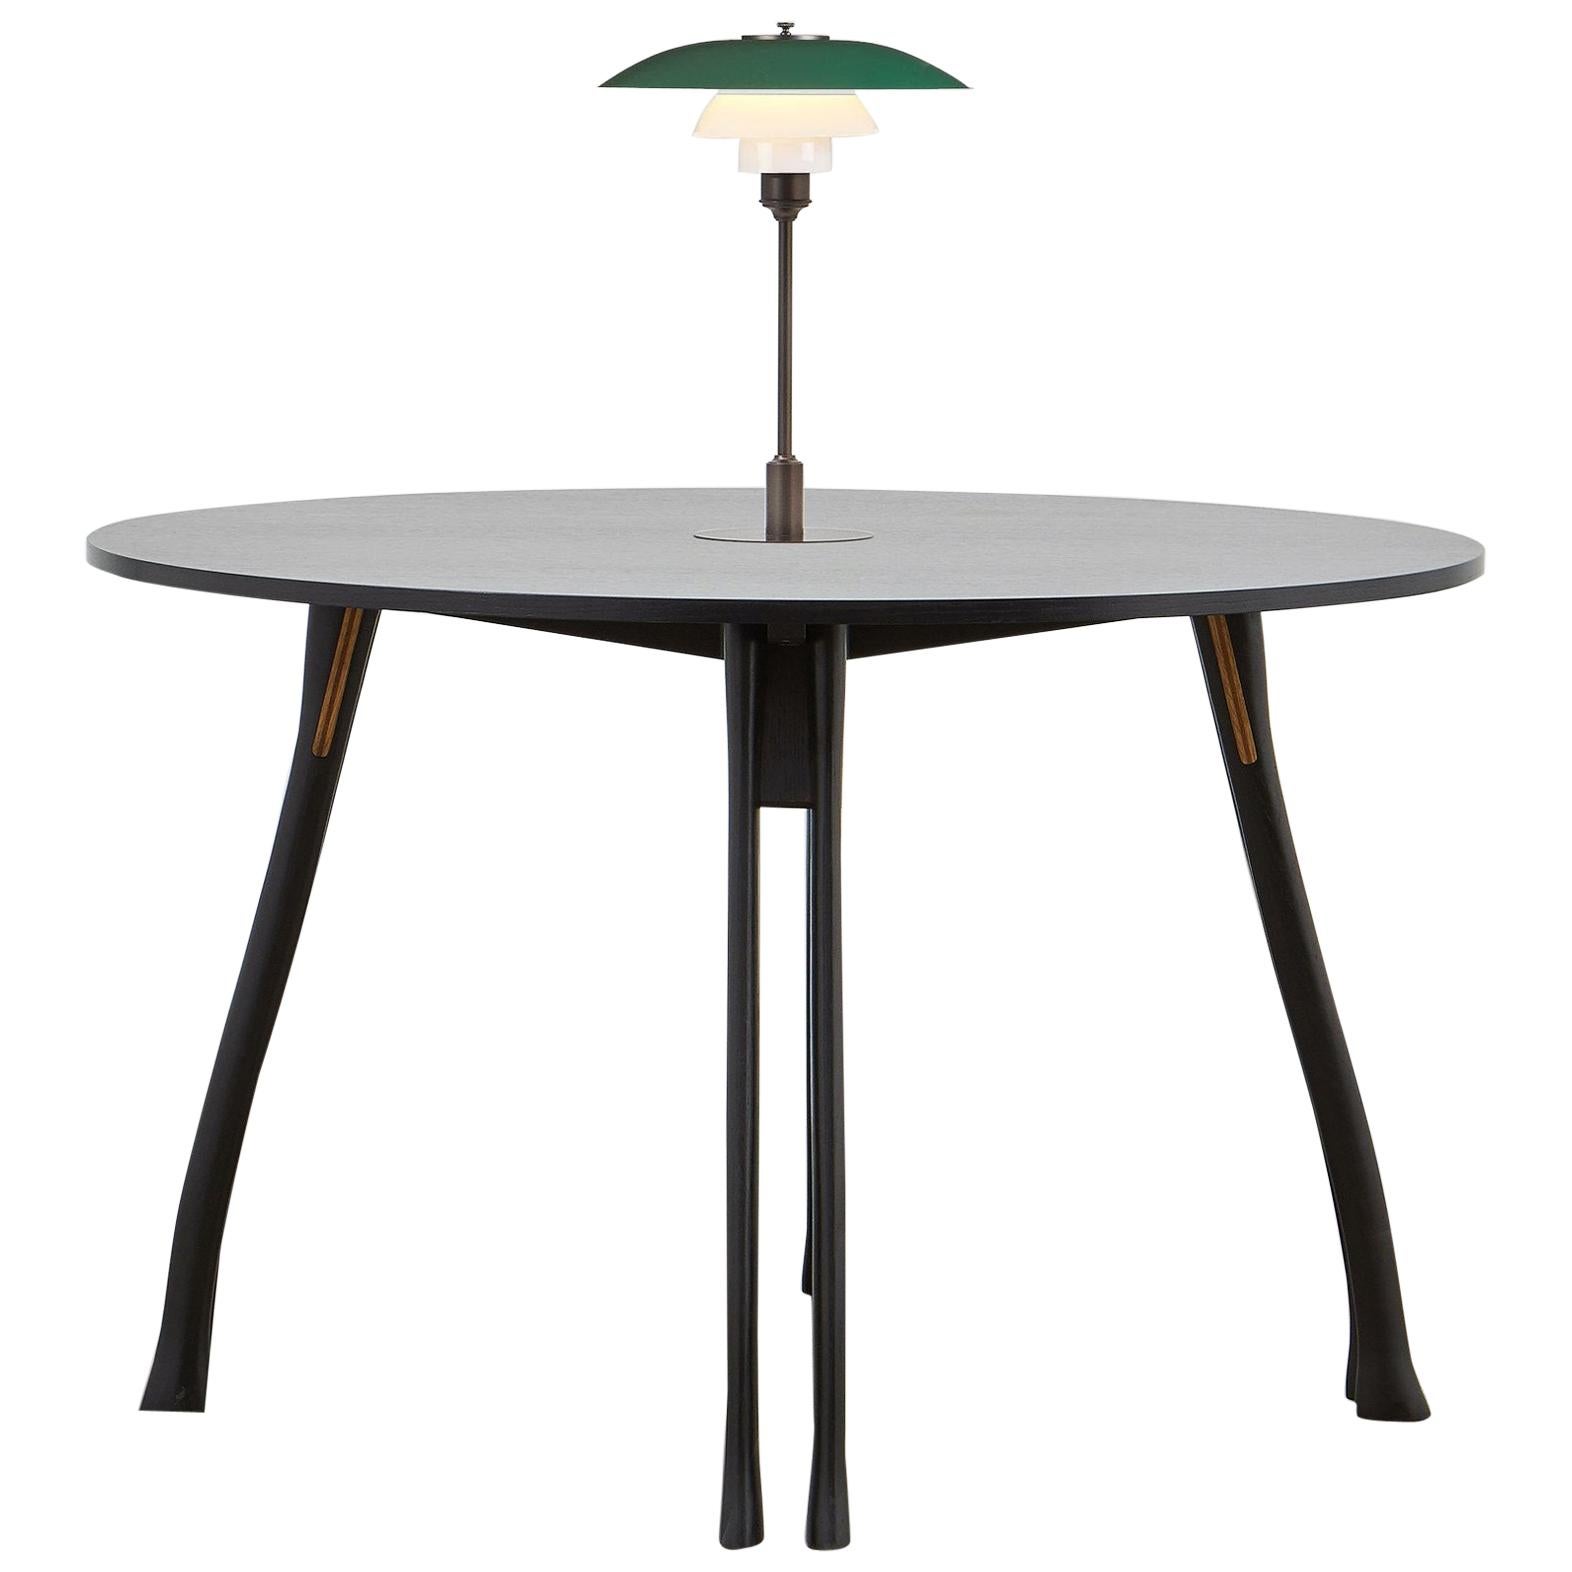 Table de chevalet PH, pieds en chêne noir, plaque de table en placage, lampe PH verte